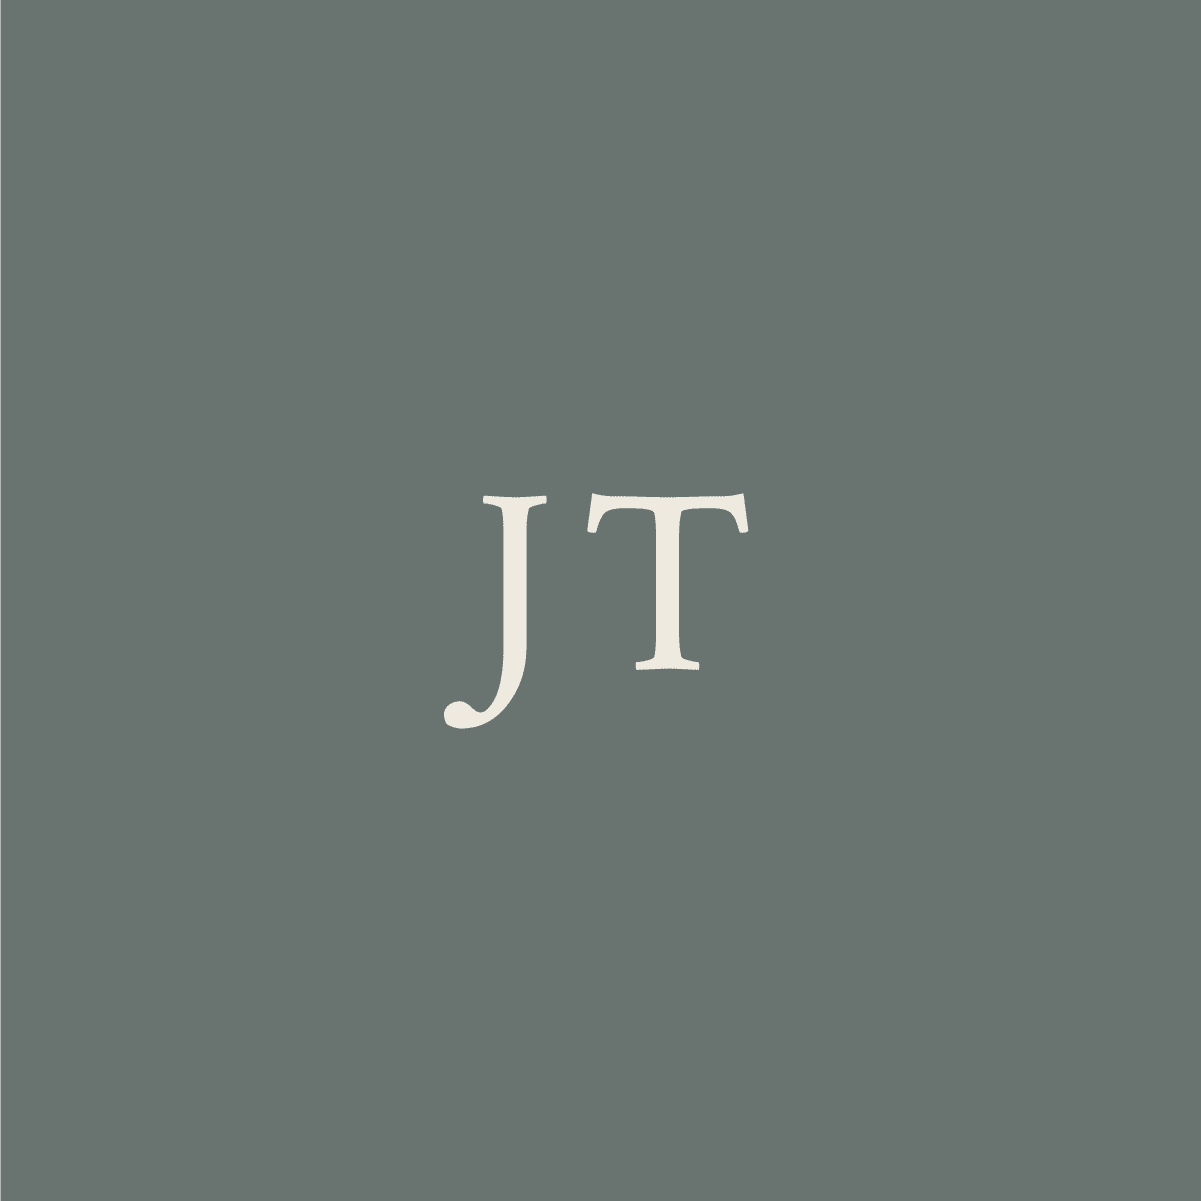 JT initials